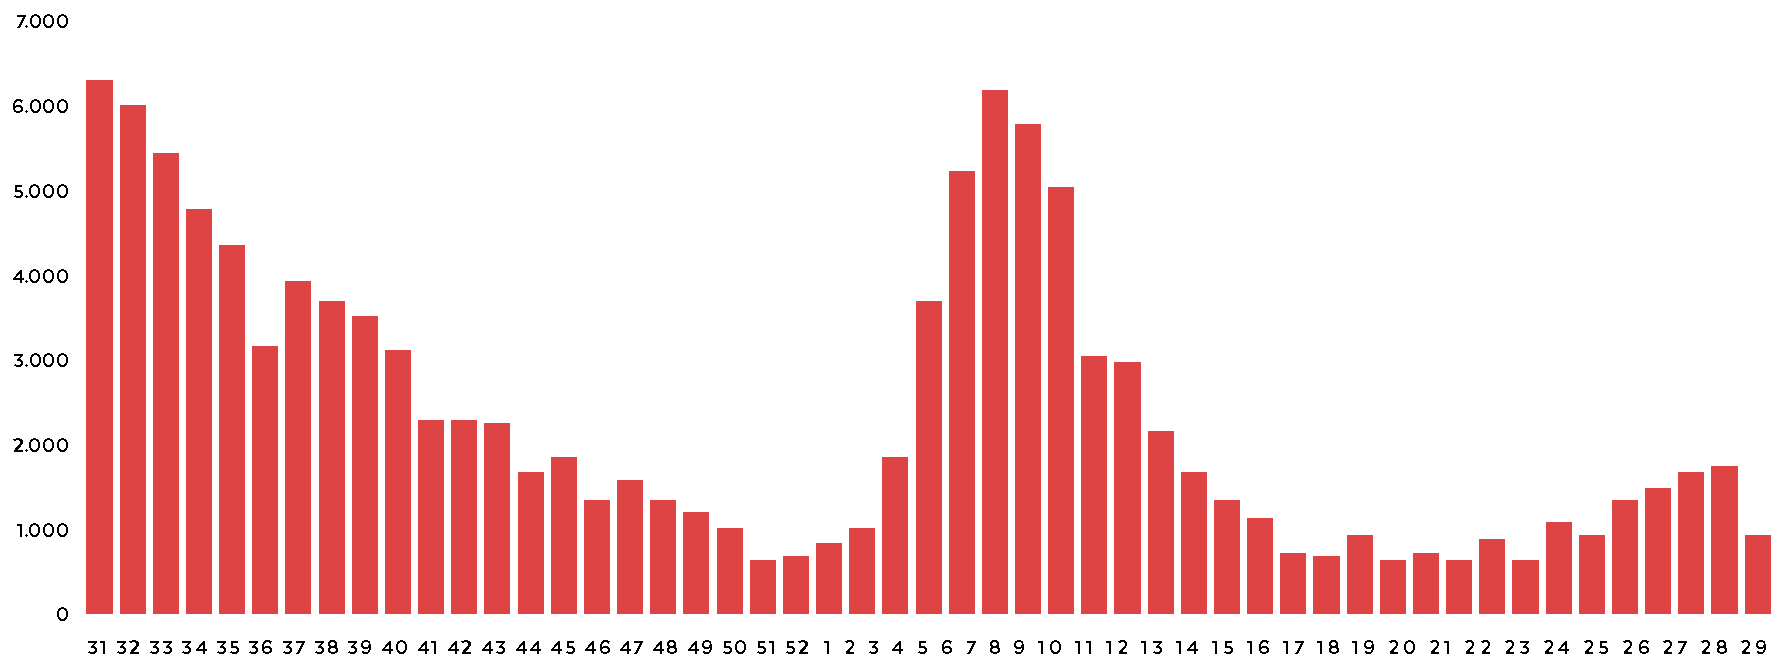 Gráfico com os Óbitos de covid-19 por semana epidemiológica de notificação